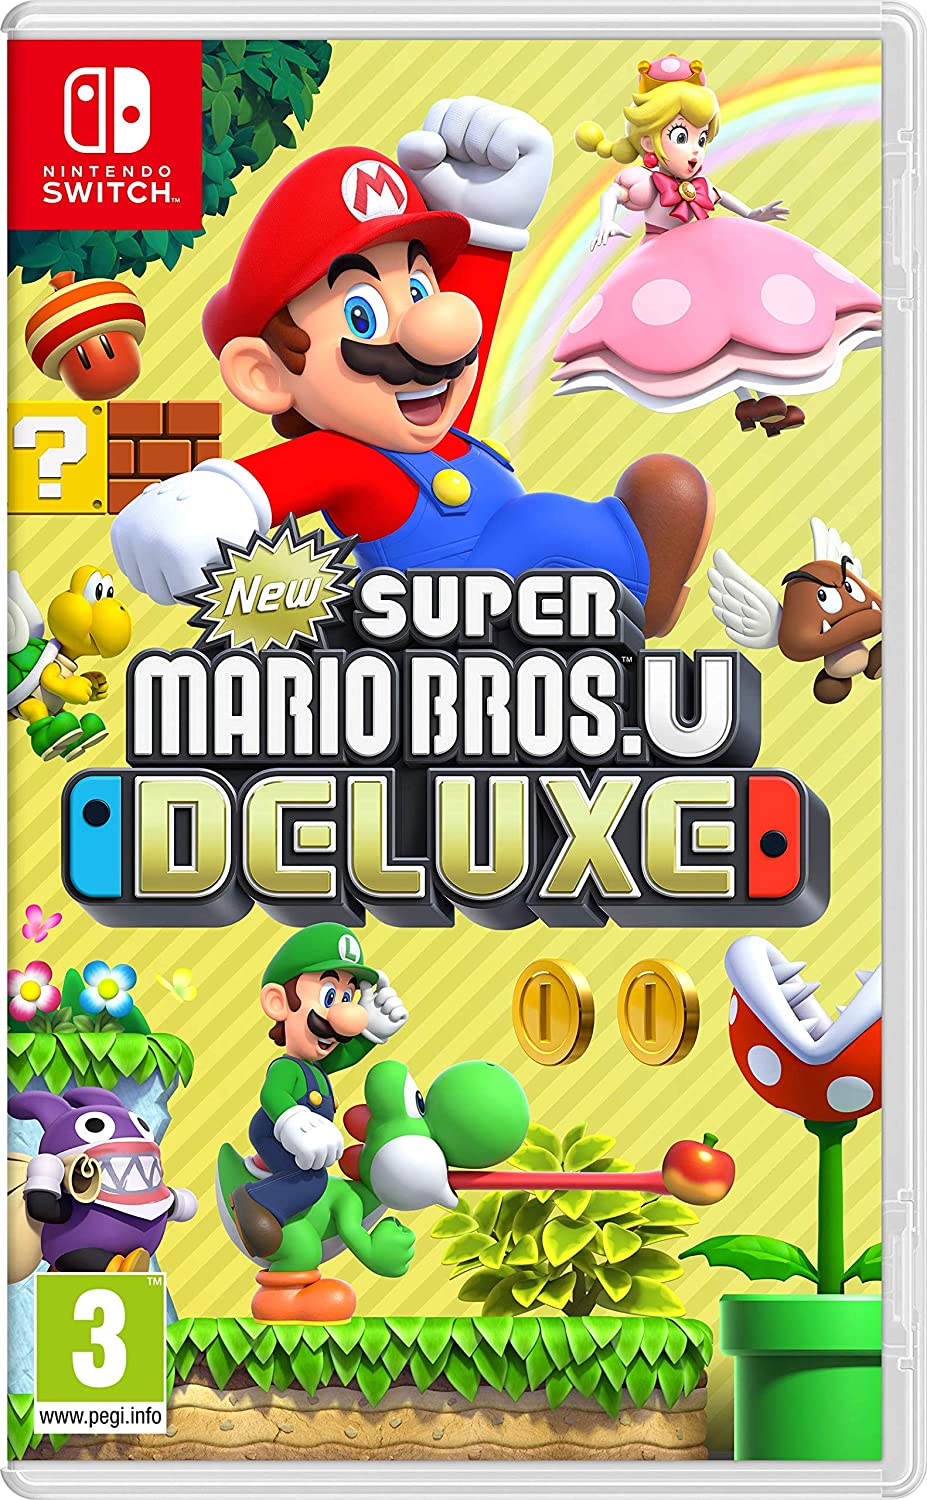 New Super Mario Bros. U Deluxe Nintendo Switch, PEGI 3 Games